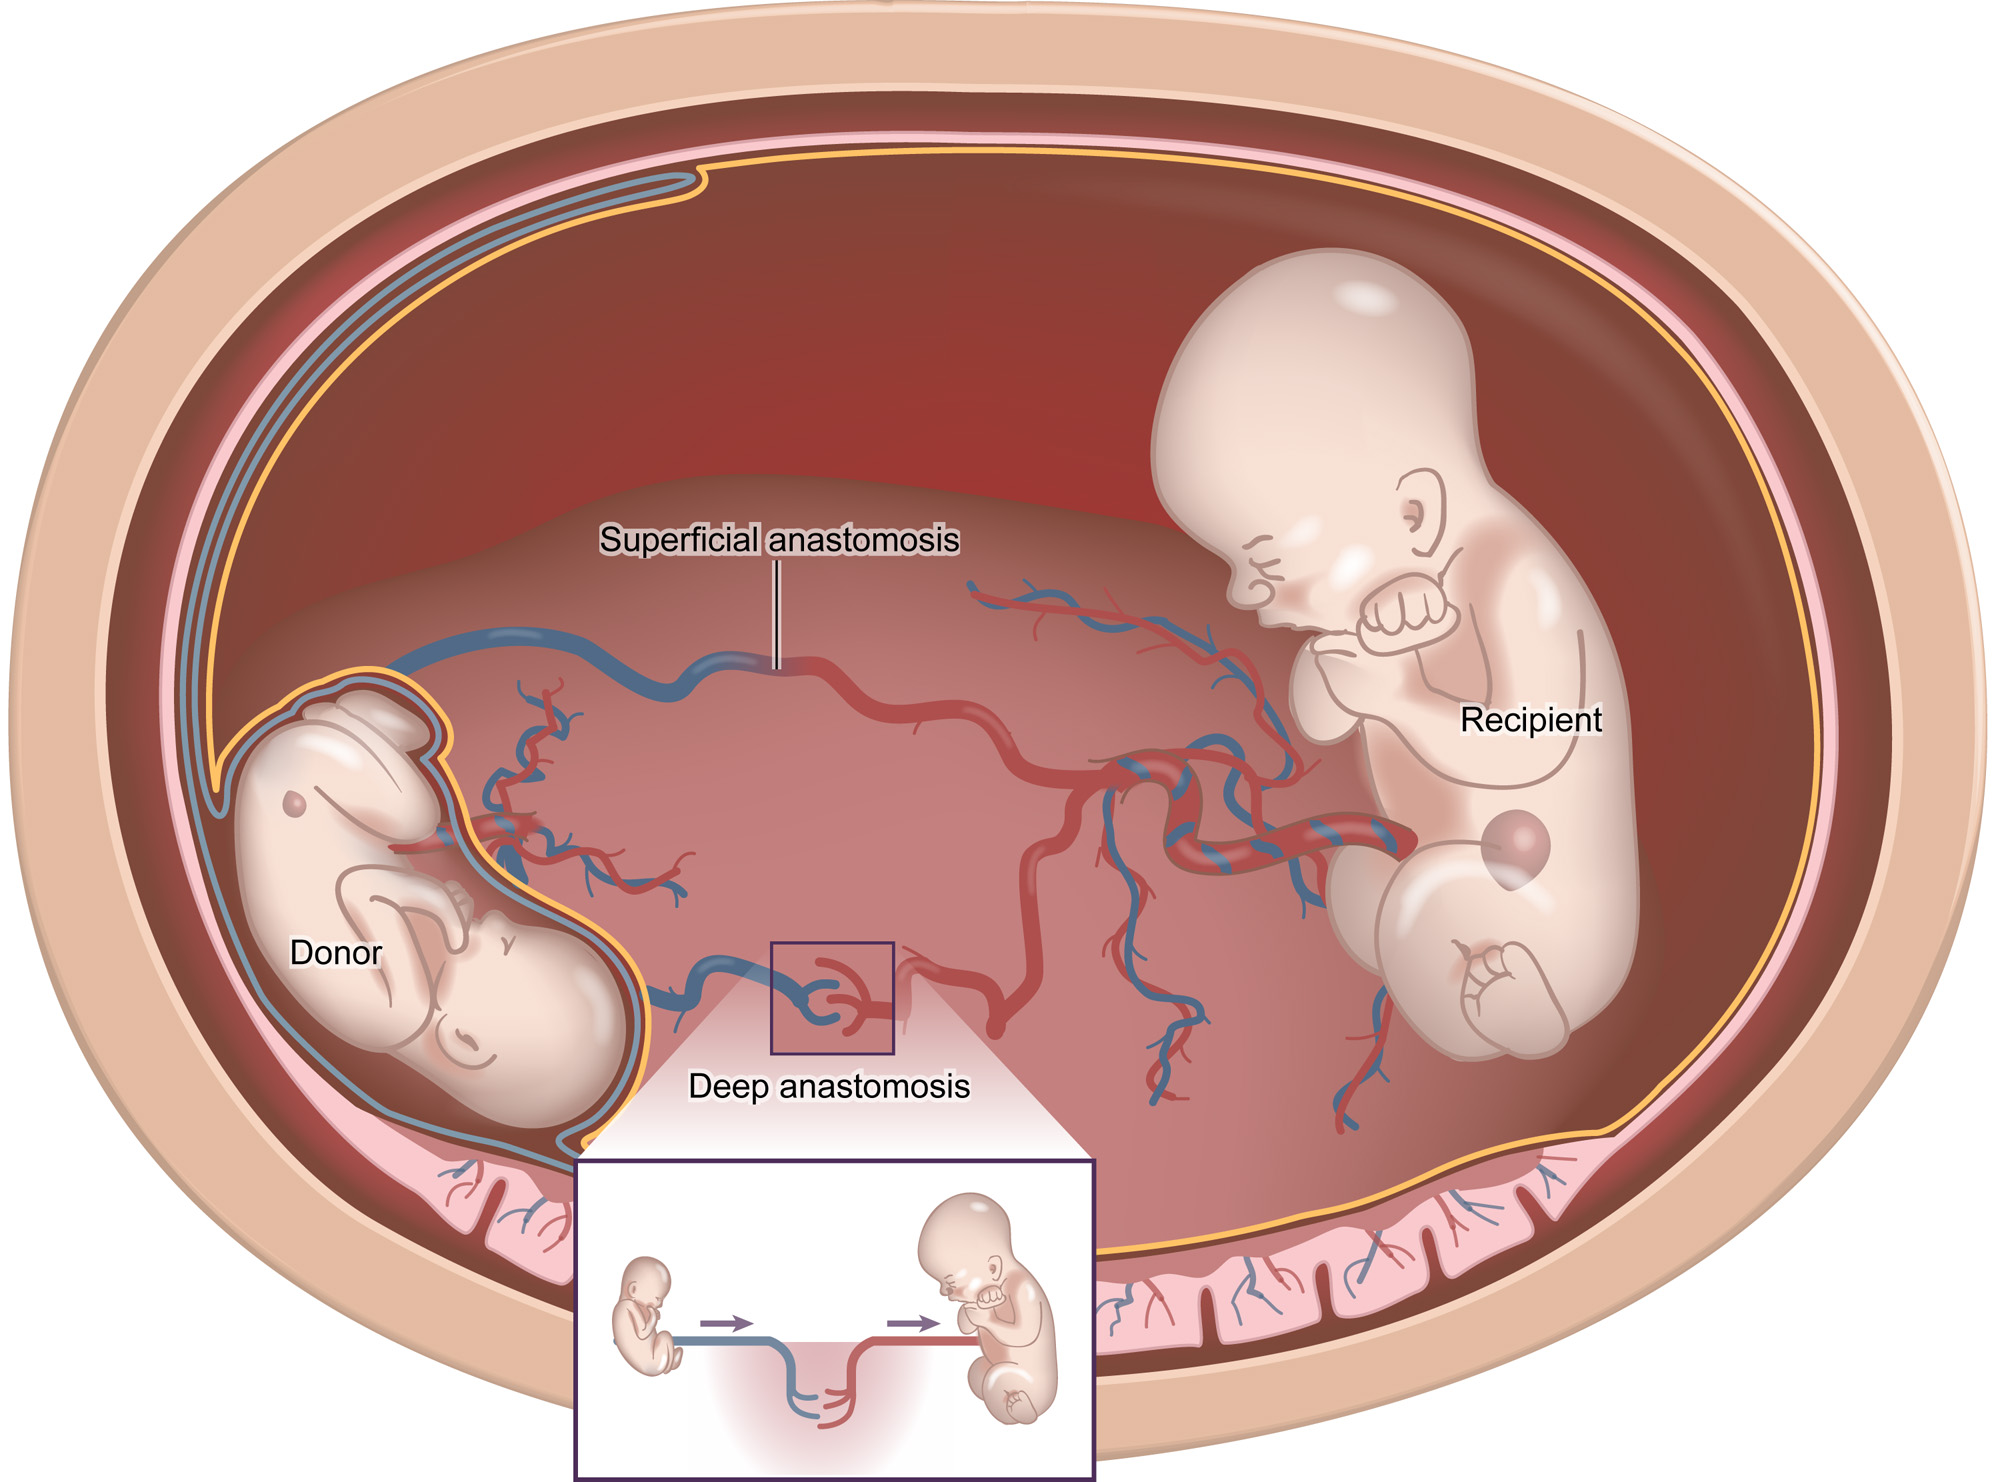 Truyền máu song thai thường dễ xảy ra ở những cặp sinh đôi cùng trứng